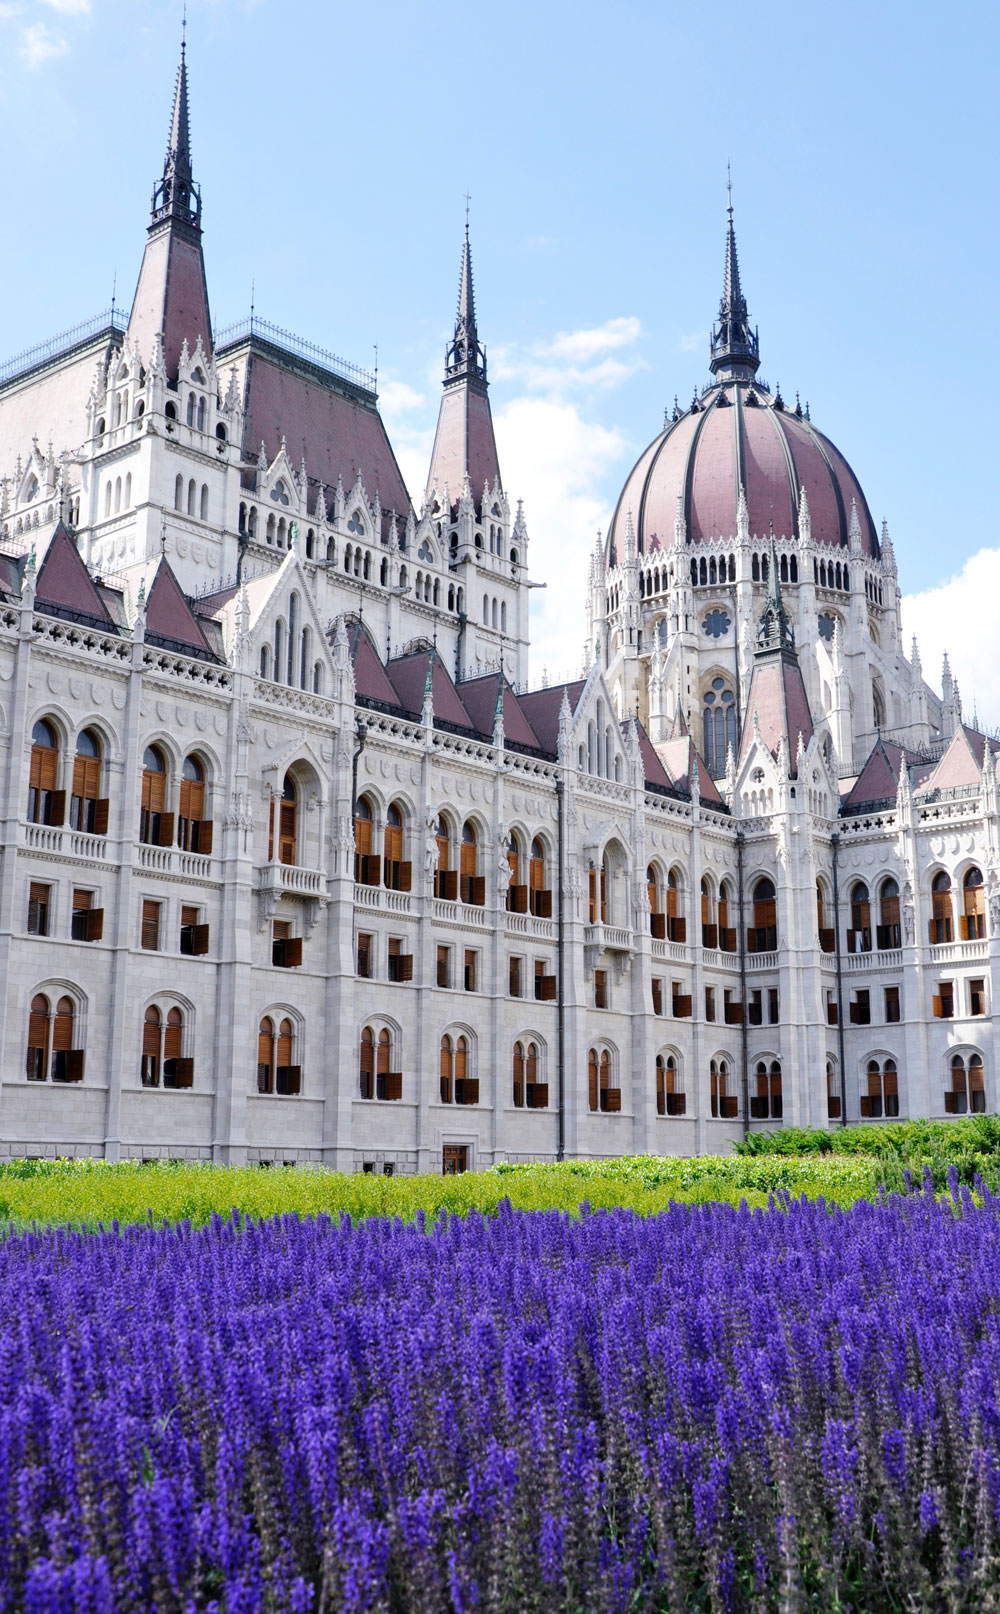 Tudo sobre Budapeste Hungria | O que fazer em Budapeste: 10 lugares e experiencias para conhecer 